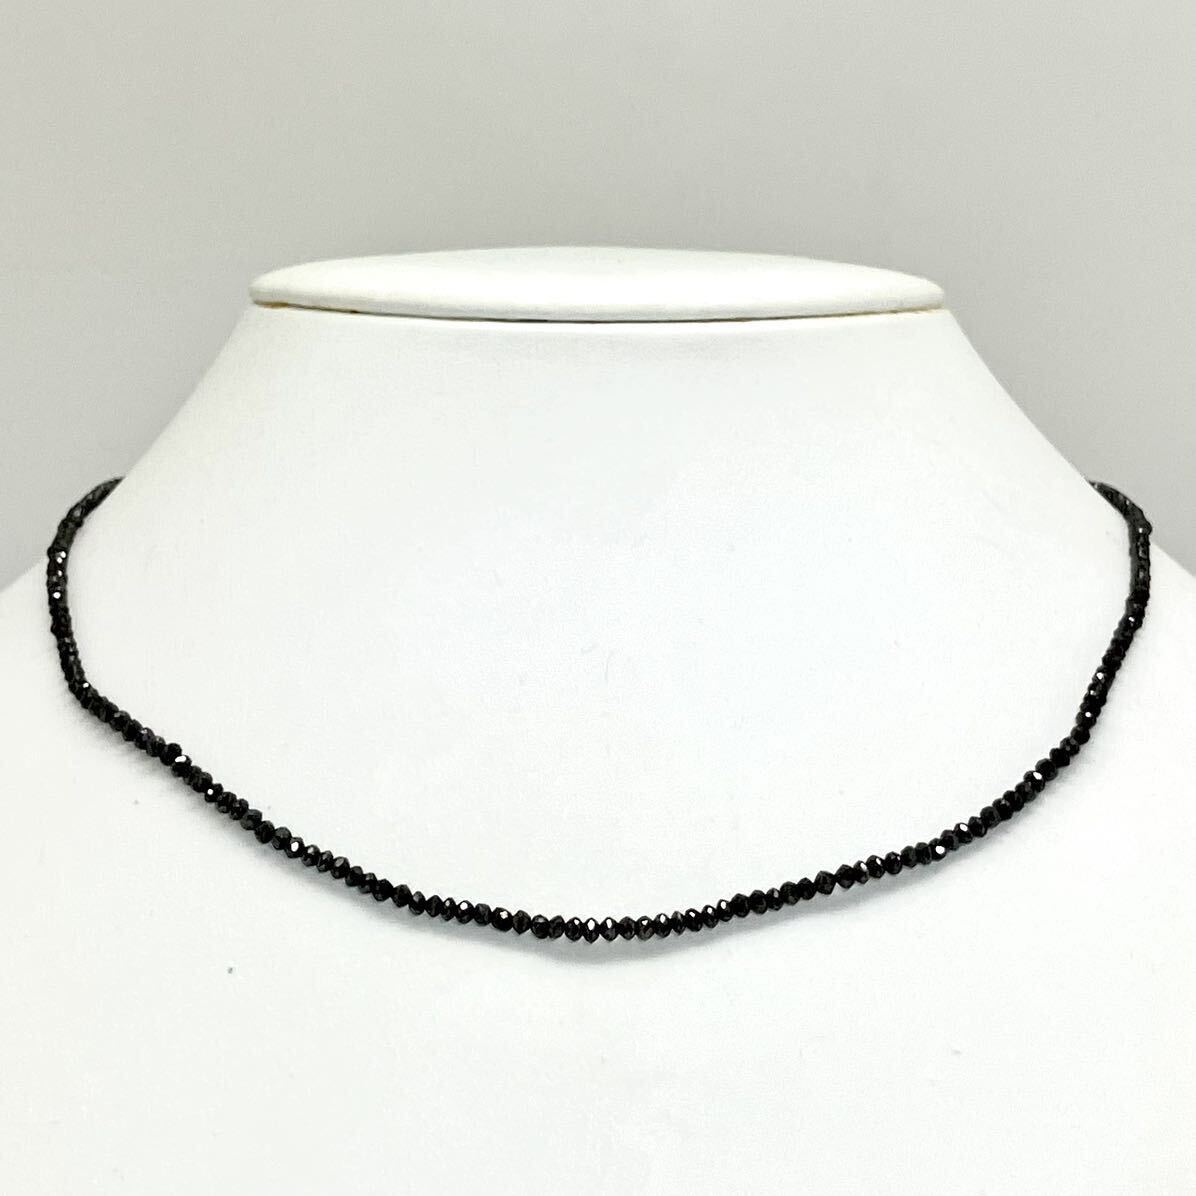 * натуральный черный бриллиантовое колье 4.3g*m примерно 42.0cm black diamond necklace ювелирные изделия jewel silver DE0